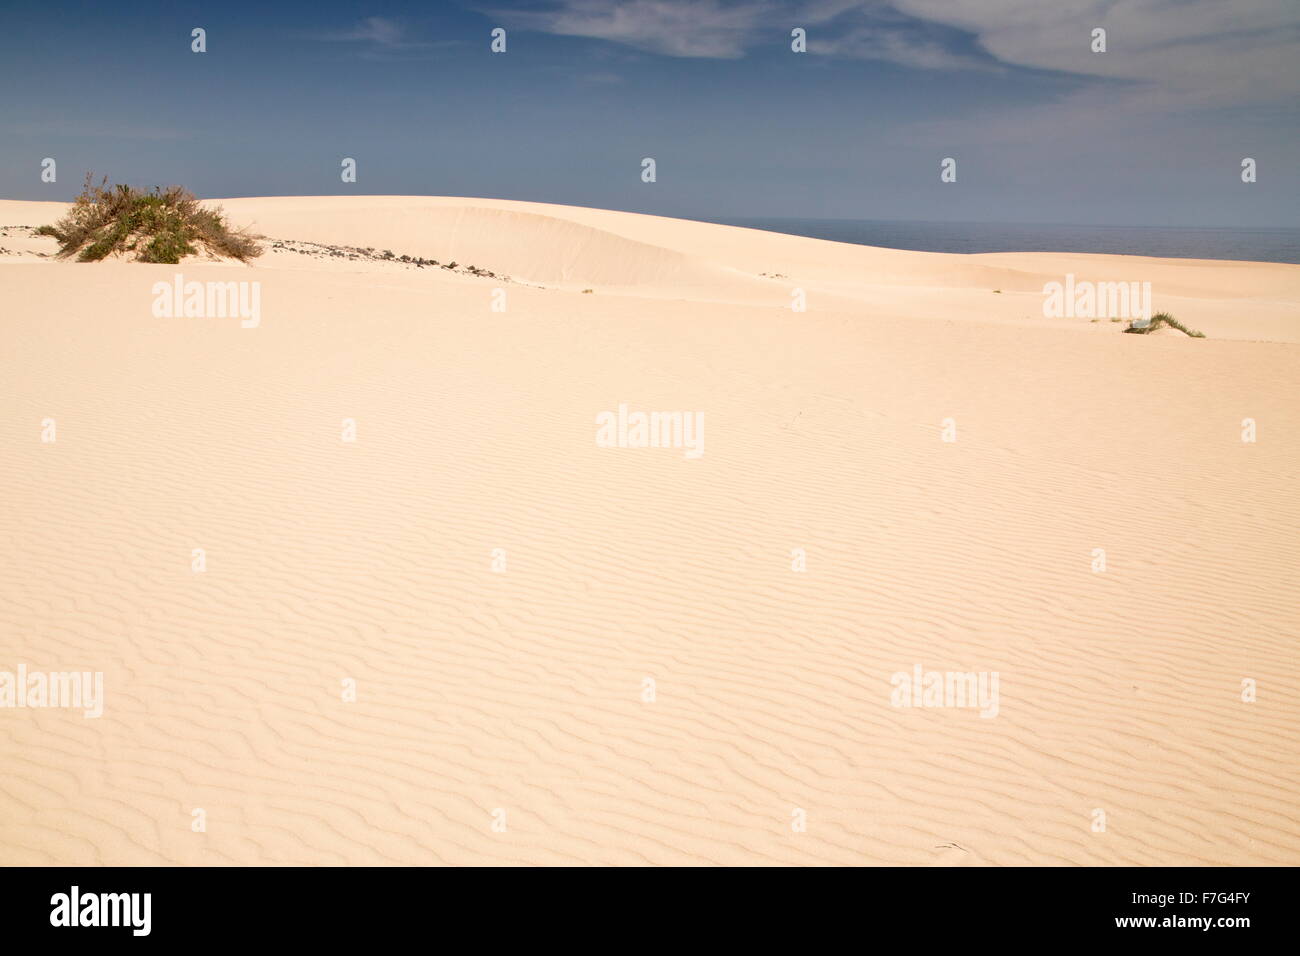 Sand-dunes in the Parque Natural de las dunas de Corralejo, Fuerteventura Stock Photo